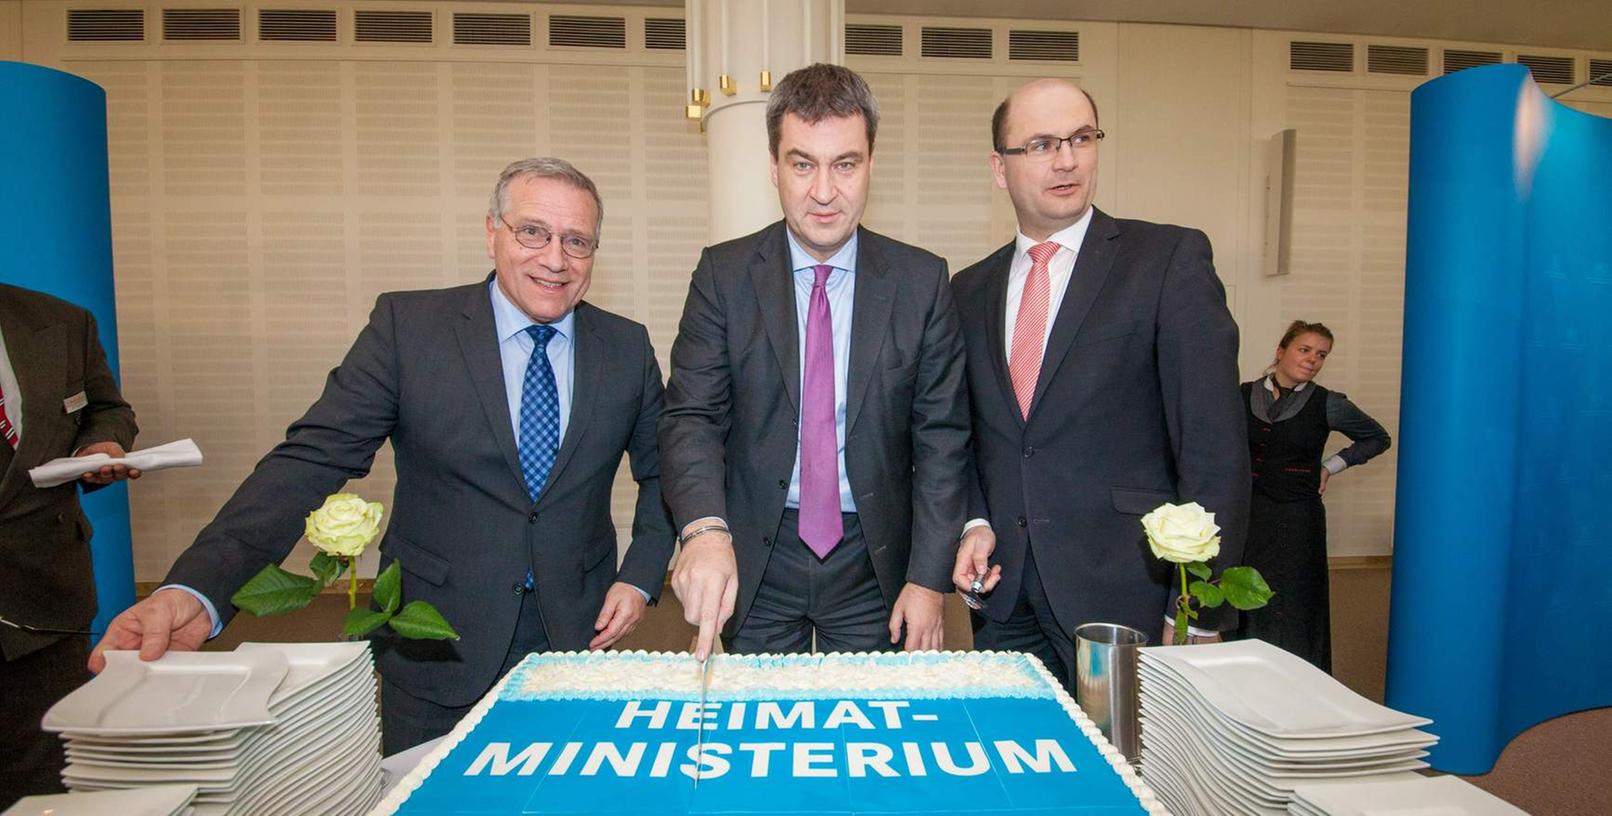 Zu jeder Feier gehört eine Torte: Johannes Hintersberger, Markus Söder und Albert Füracker schneiden sie an.